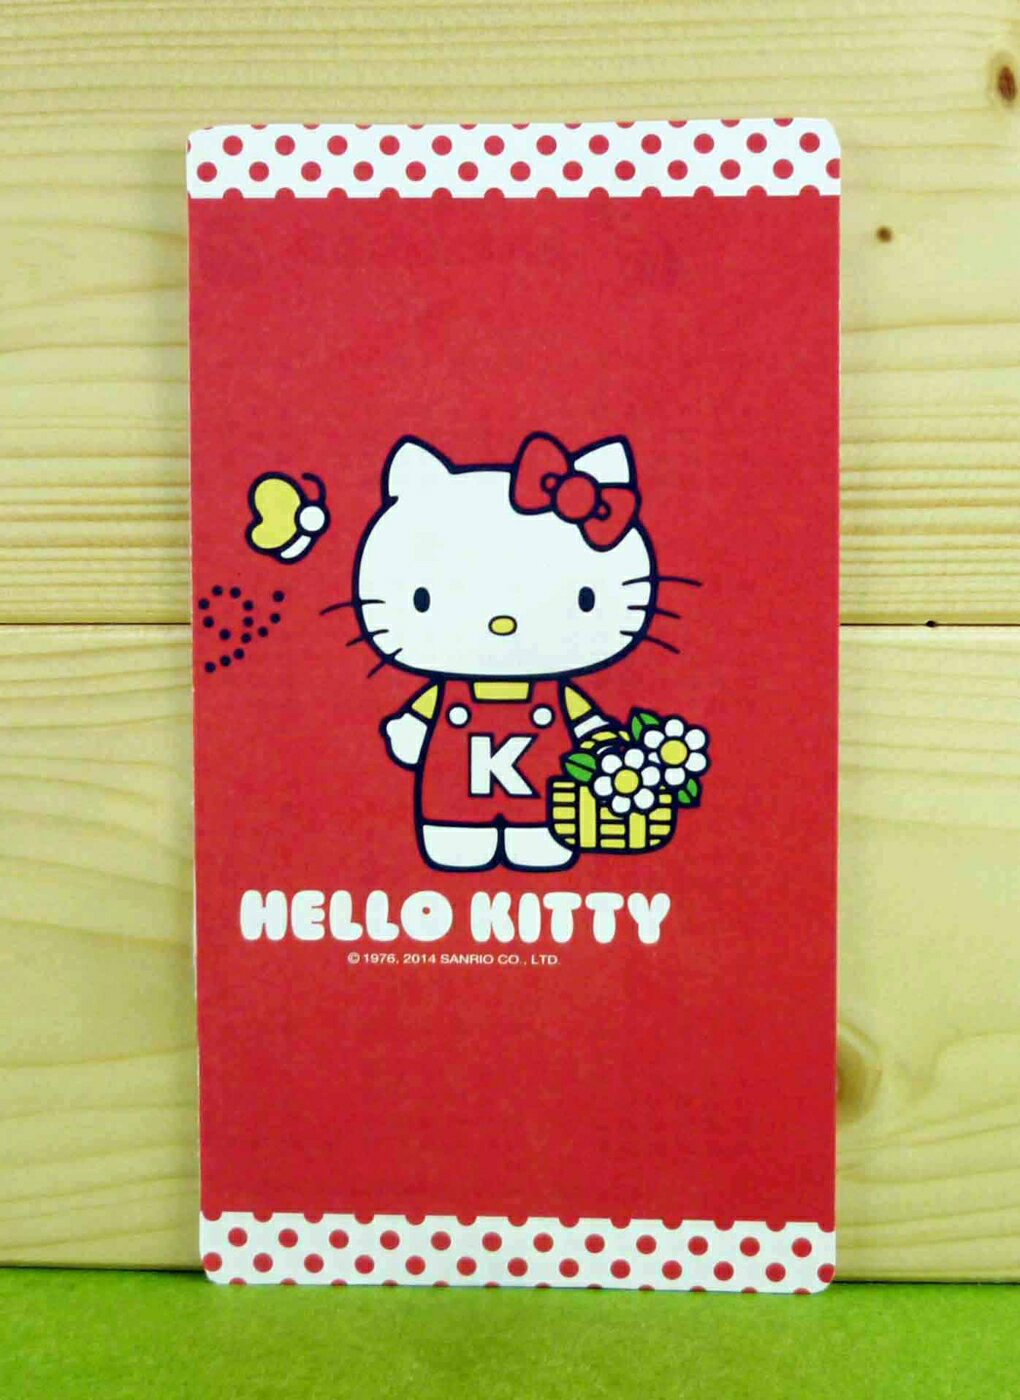 【震撼精品百貨】Hello Kitty 凱蒂貓 卡片-提花籃 震撼日式精品百貨